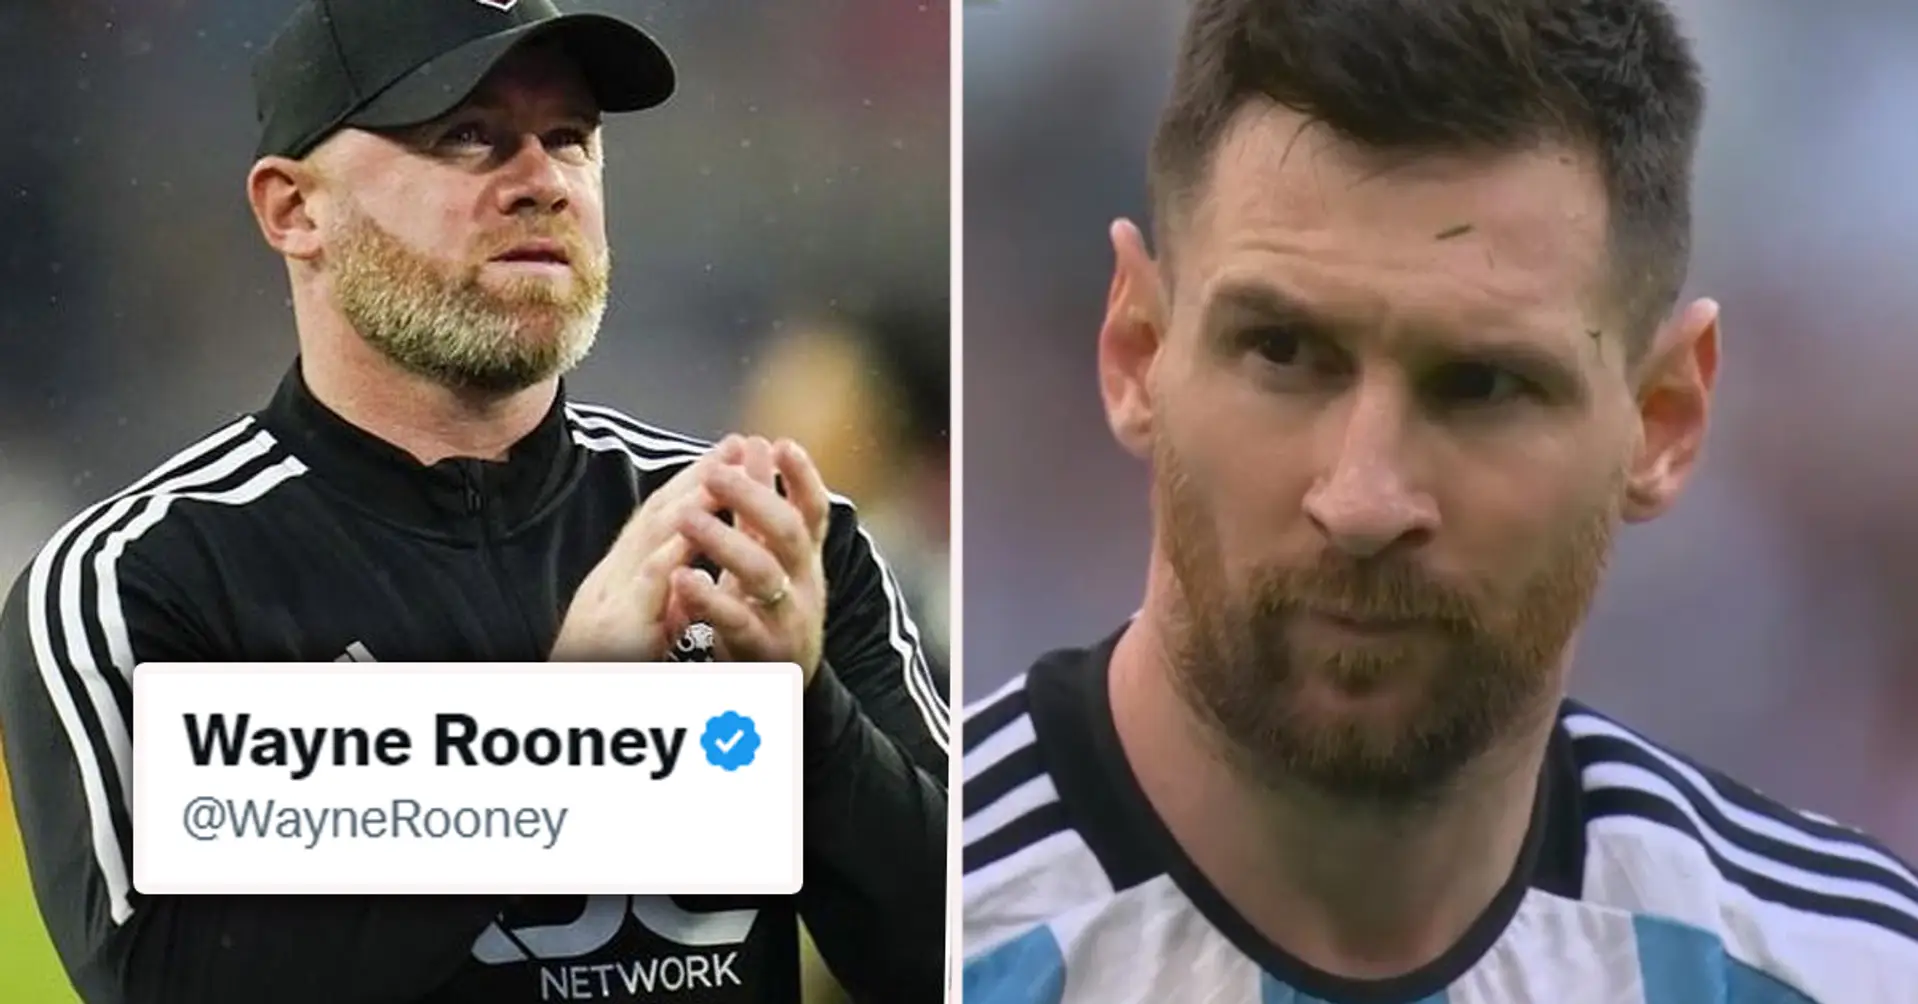 Er erinnert sich an alles. Wayne Rooney reagiert auf seinen eigenen Tweet von 2012 über Leo Messi: "Nichts hat sich geändert" 